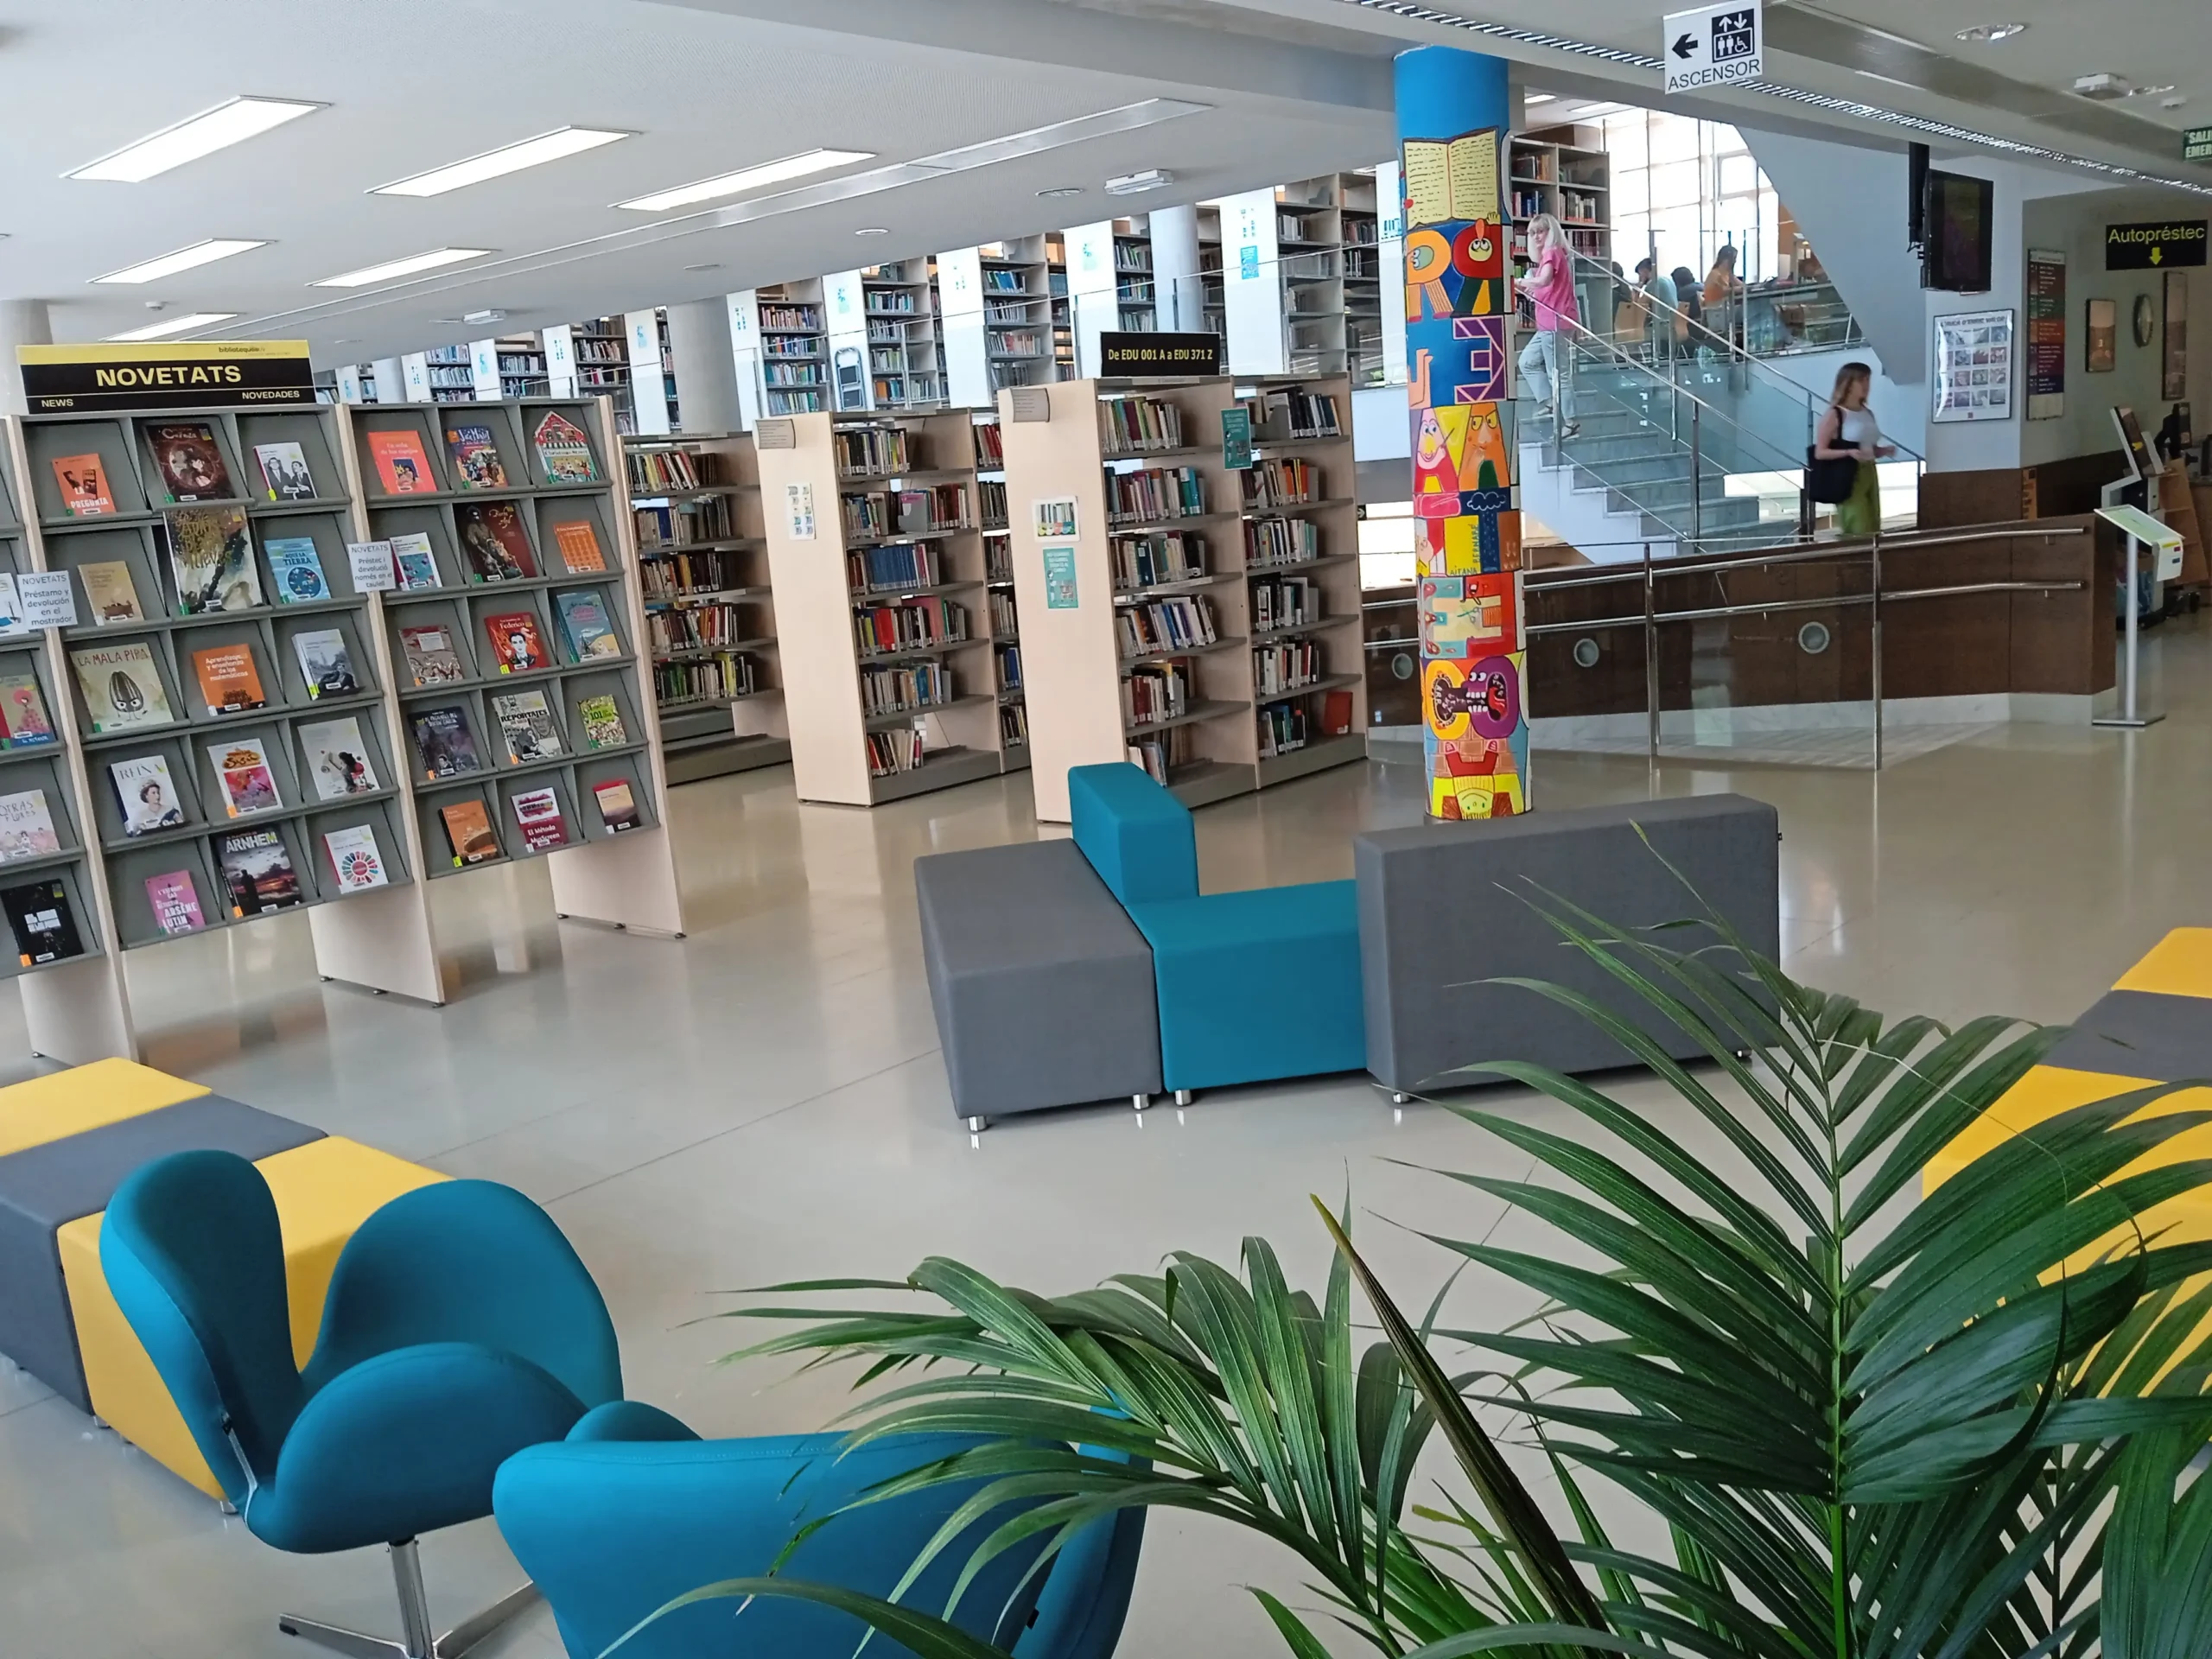 biblioteca uv magisteri campus ontinyent prestamos de libros - Cómo funciona el prestamo de libros en una biblioteca